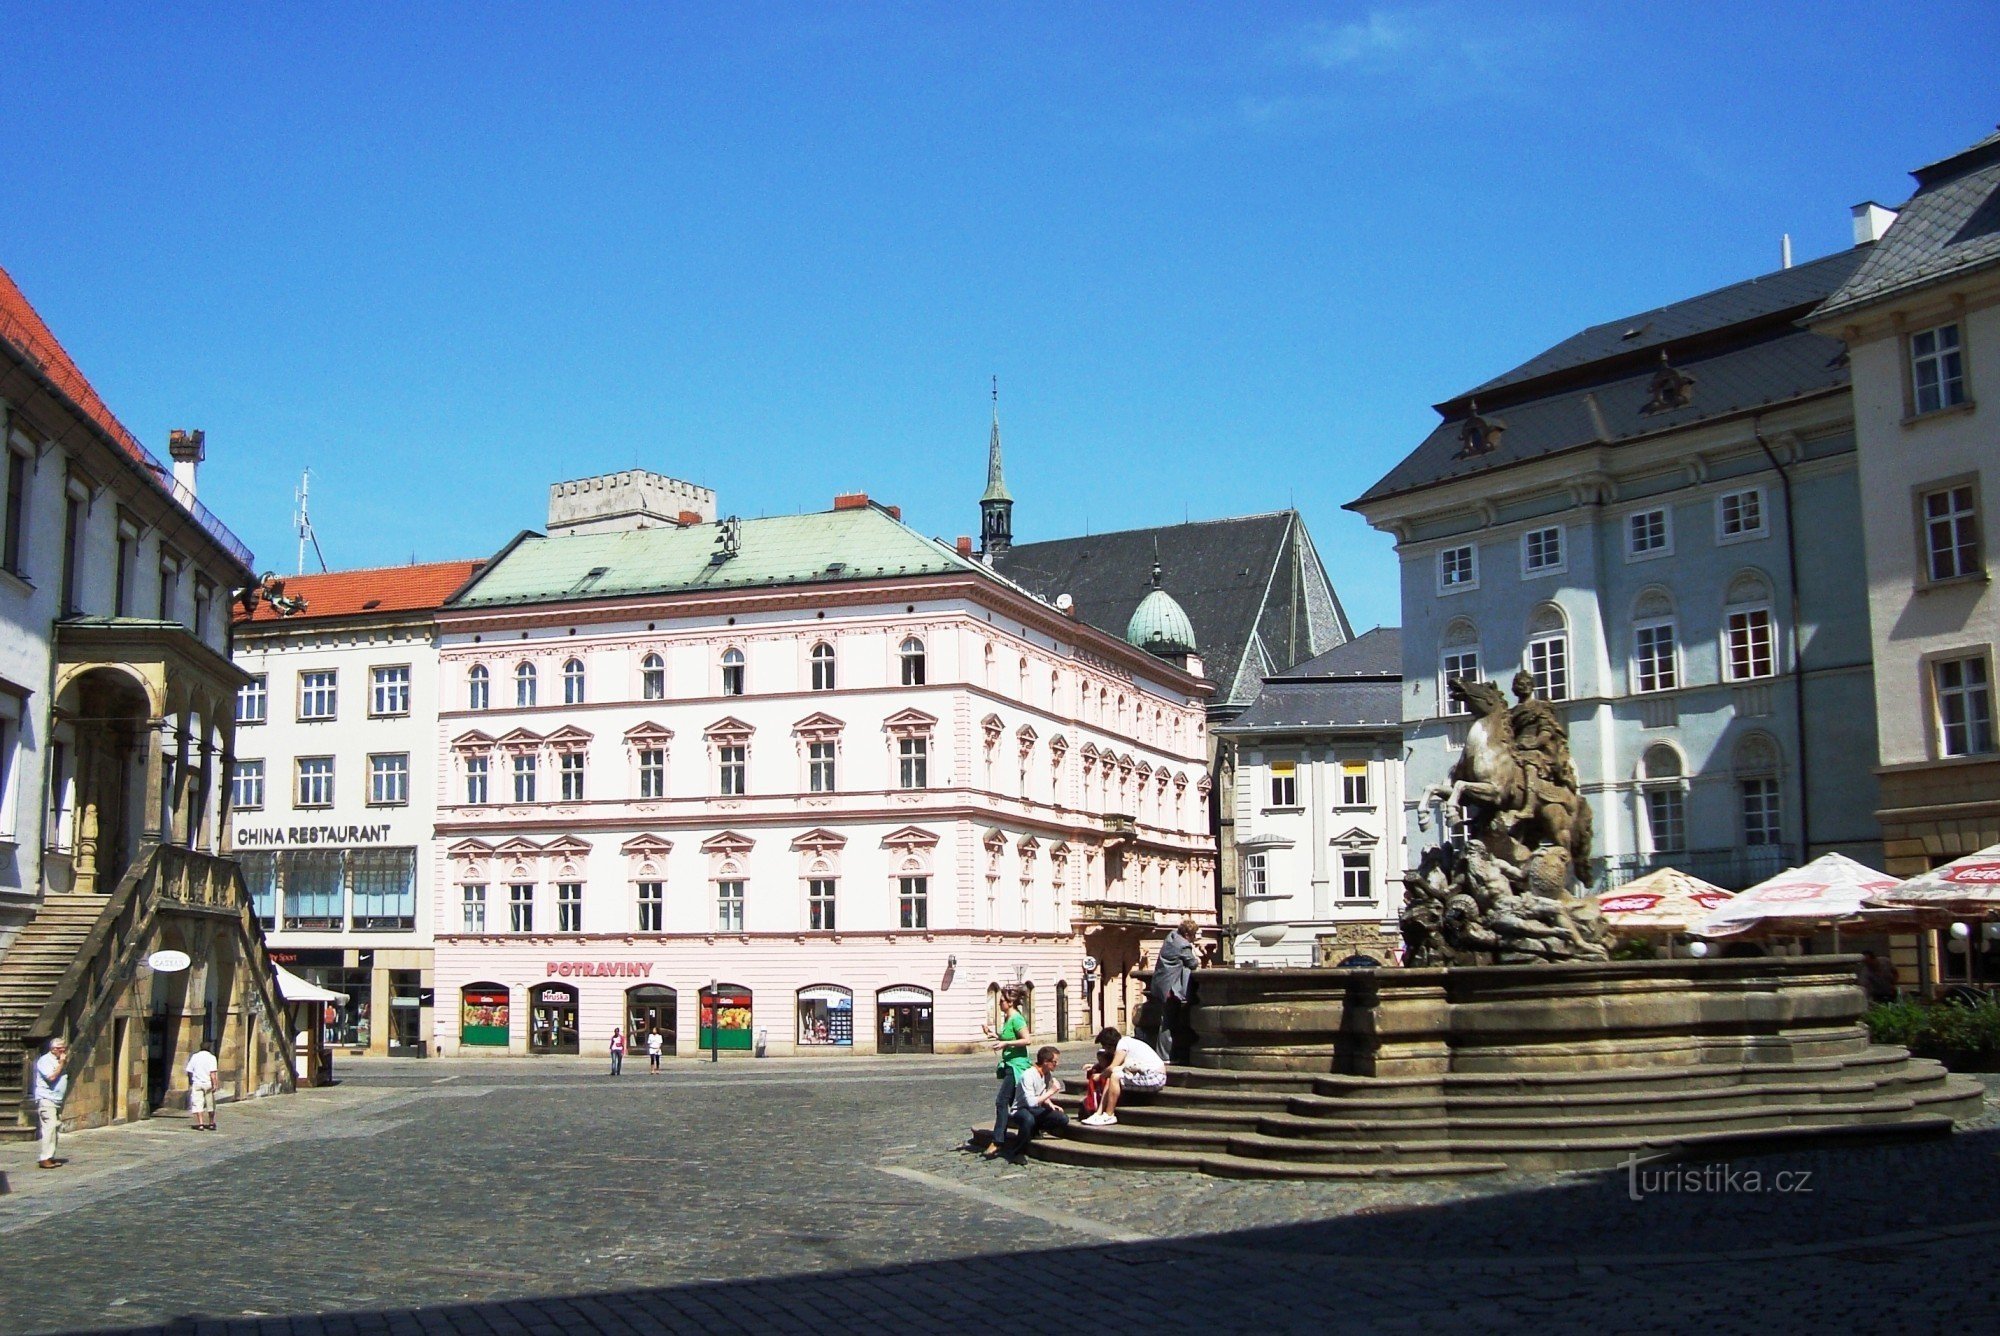 Olomouc-Horní náměstí-Caesars fontän från 1725 och det före detta Dietrichstein Palace-Fo